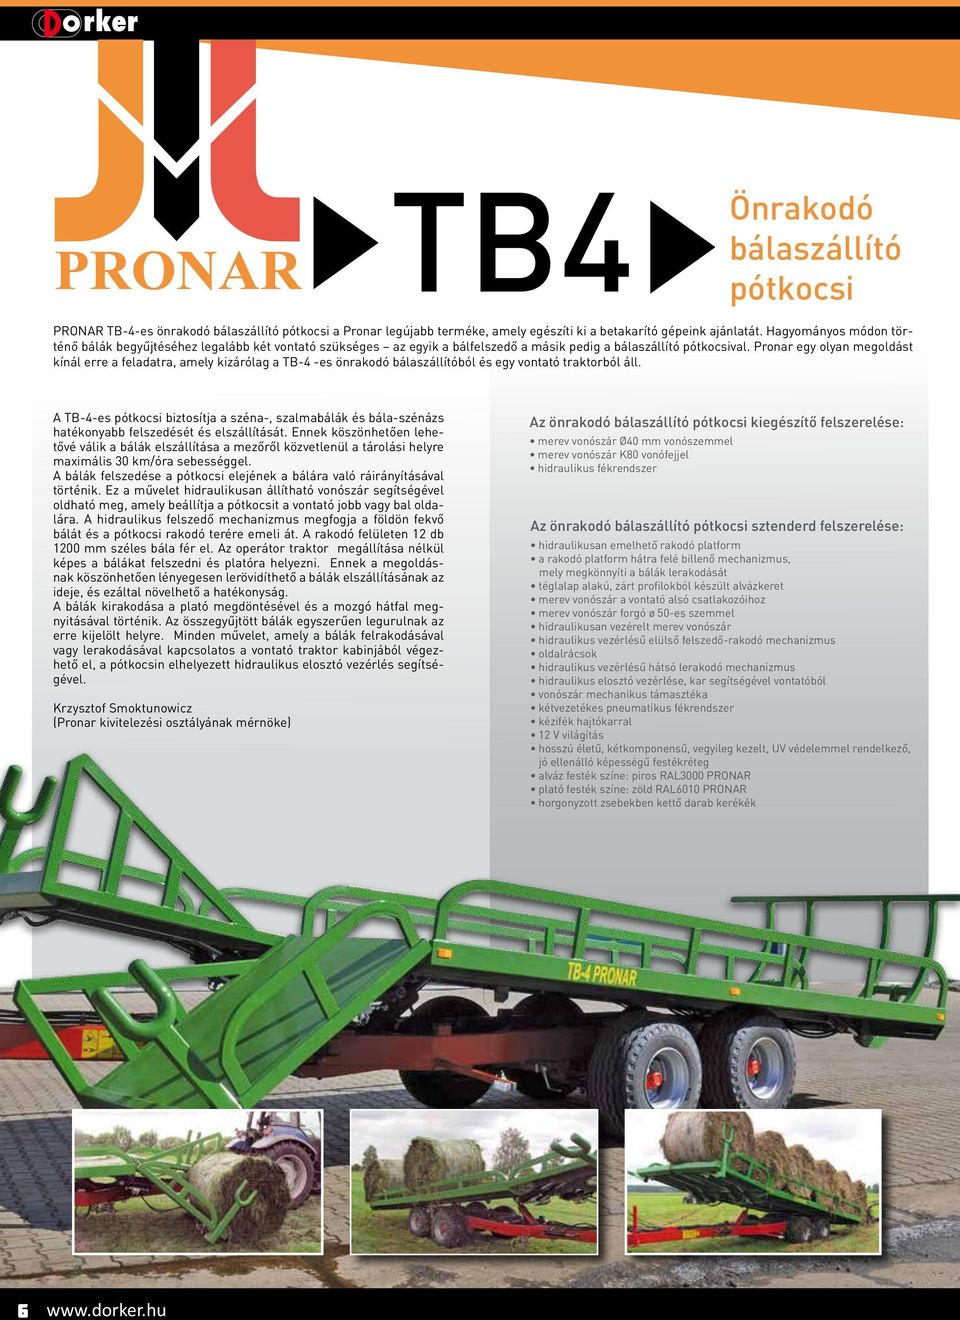 Pronar egy olyan megoldást kínál erre a feladatra, amely kizárólag a TB-4 -es önrakodó bálaszállítóból és egy vontató traktorból áll.